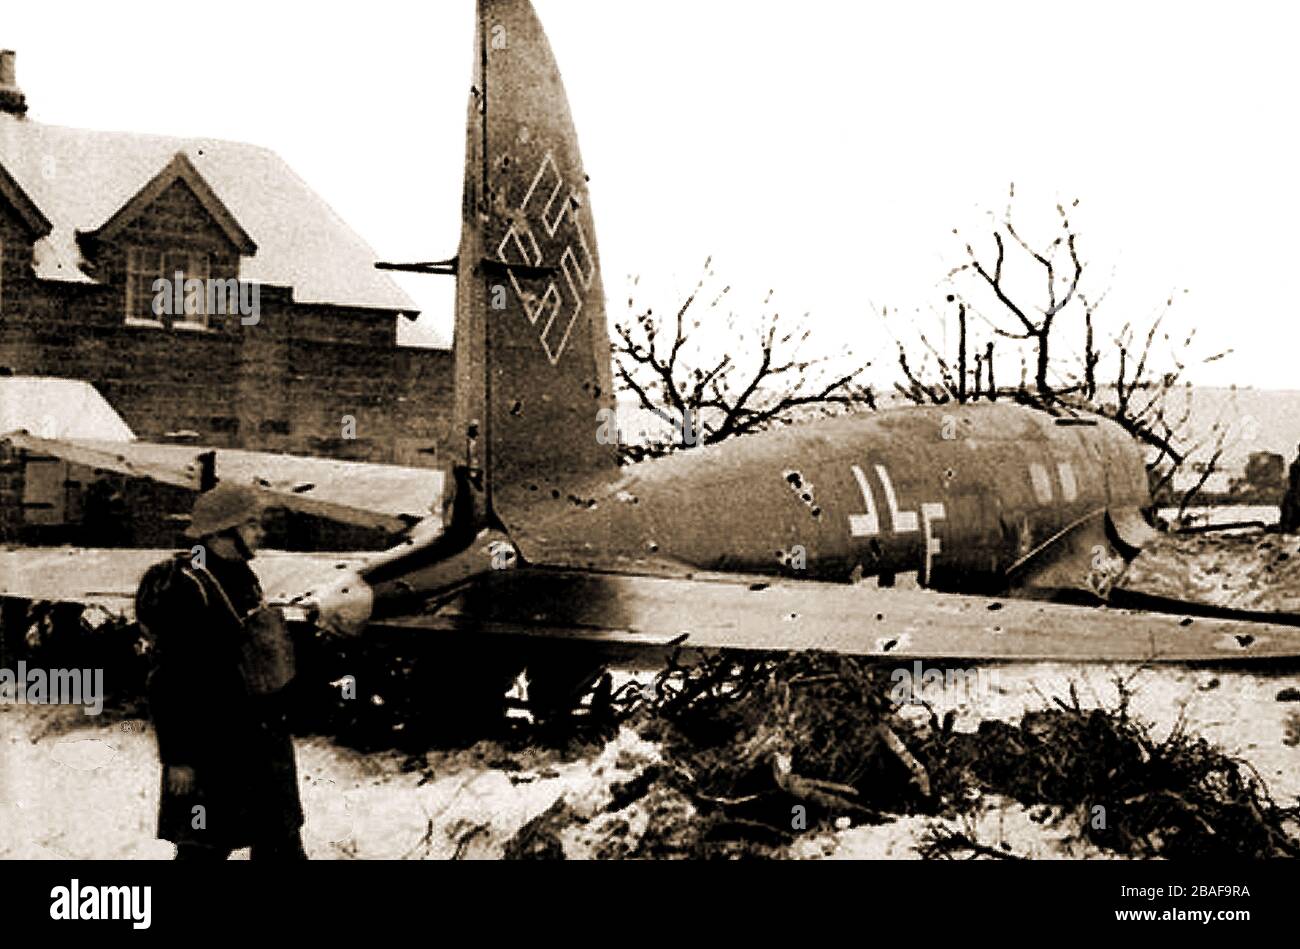 Whitby, North Yorkshire - Una rara foto del primer avión alemán derribado en suelo inglés en la Segunda Guerra Mundial en la granja Bannial Flatt en Sleights Lane End el 3 de febrero de 1940. El piloto que derribó el avión fue el Capitán del Grupo Peter Townsend, quien más tarde se conectó románticamente con la Princesa Margarita de Gran Bretaña. Rudolf Leushacke, fue asesinado instantáneamente en el primer granizo de balas disparadas por Townsend. Una placa fue erigida para conmemorar el incidente en un pilar de piedra en sleights Lane End, al norte de Whitby en el cruce de la A171 y la A169. Foto de stock